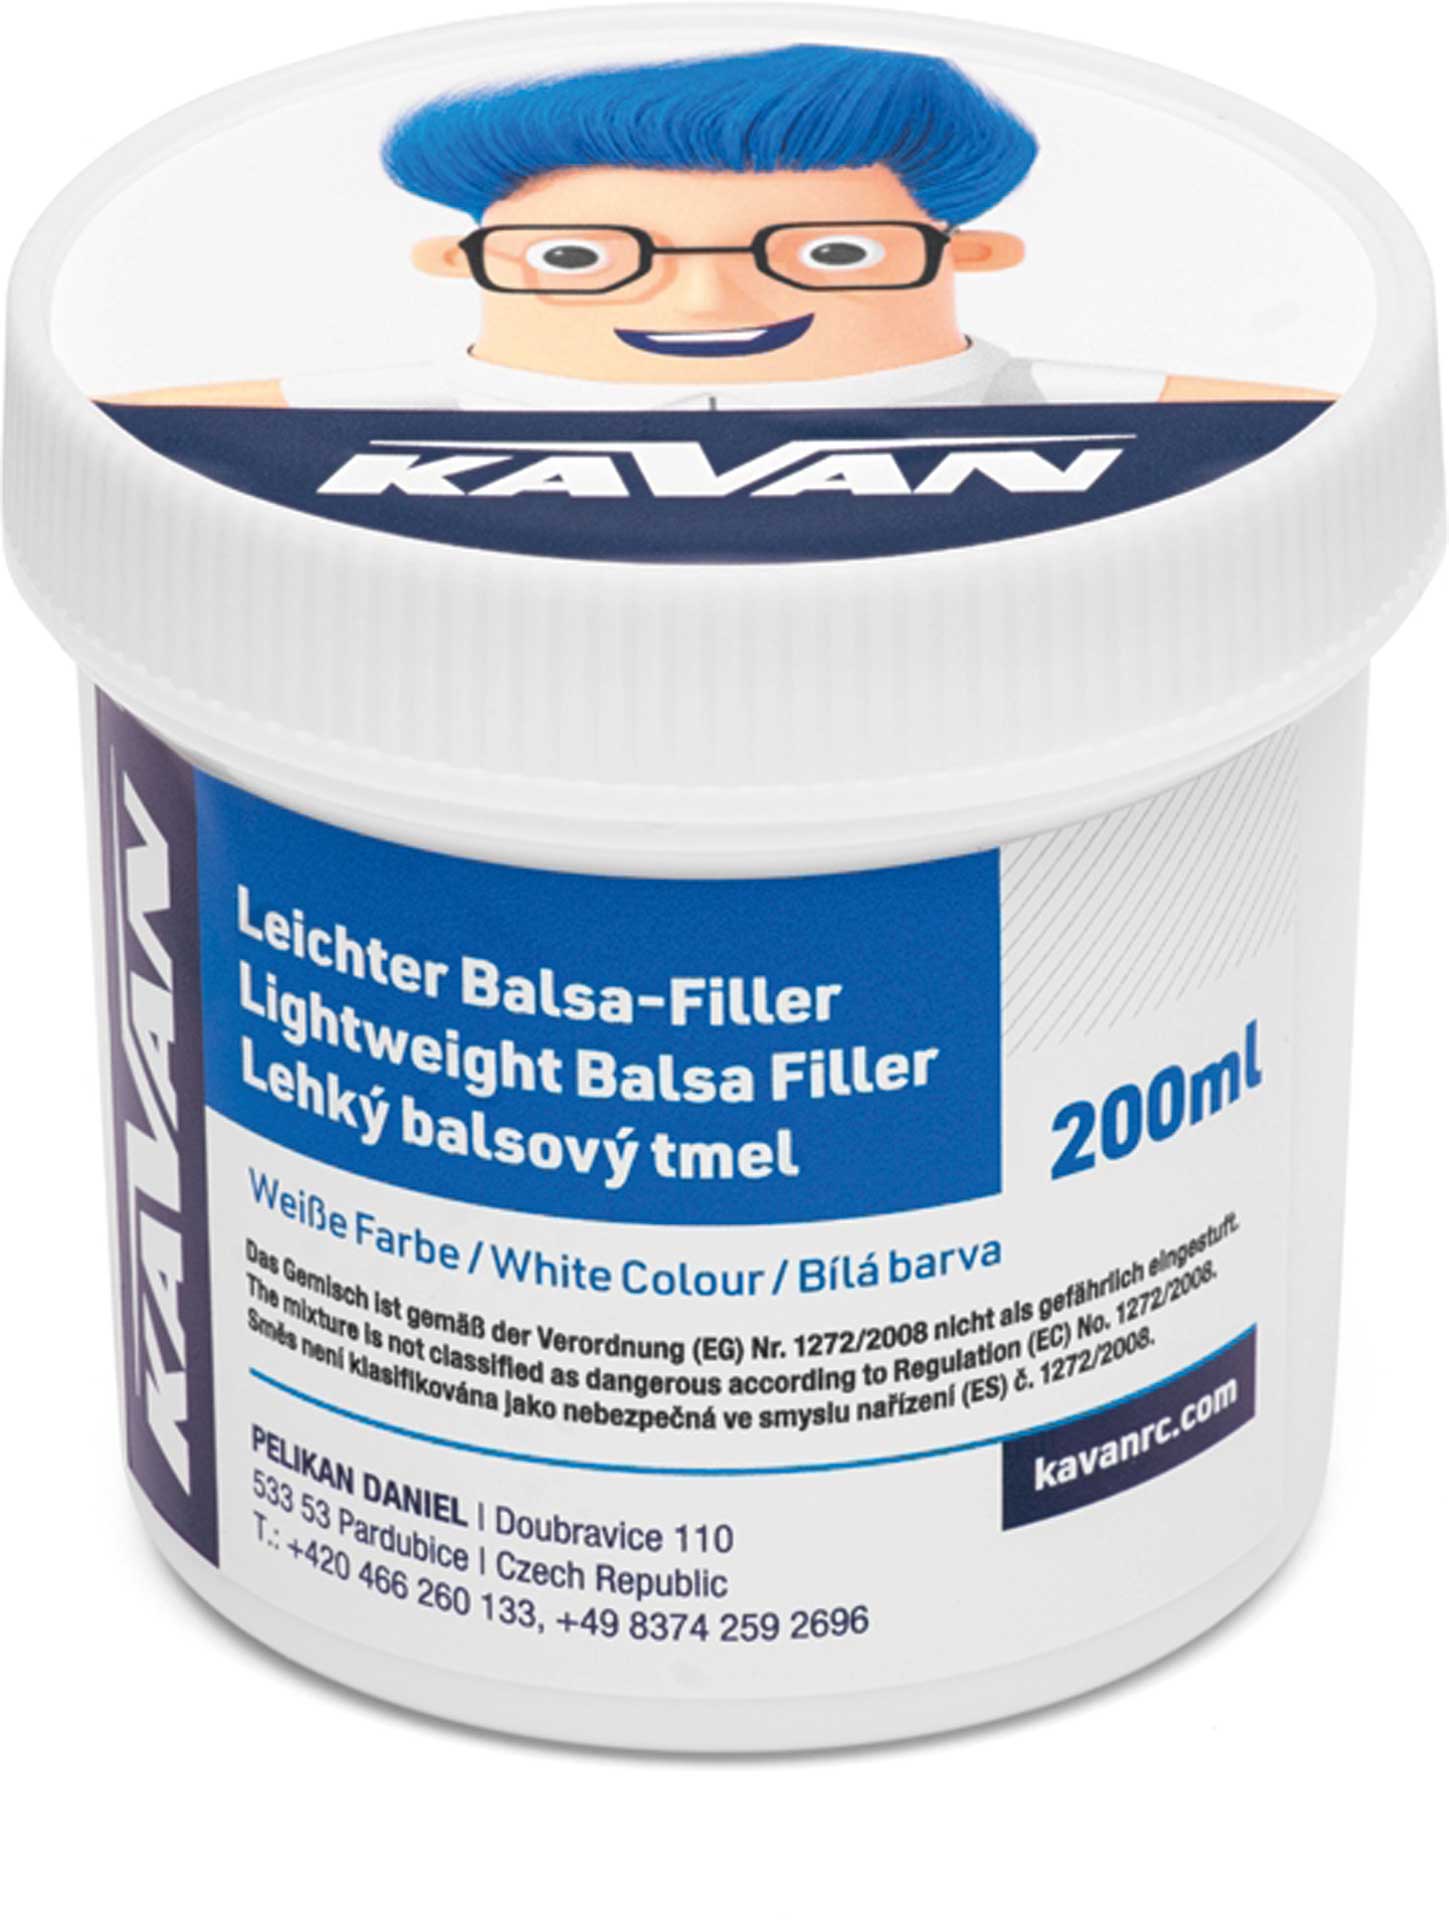 KAVAN Balsa-Filler 200ml - blanc (DE étiquette)